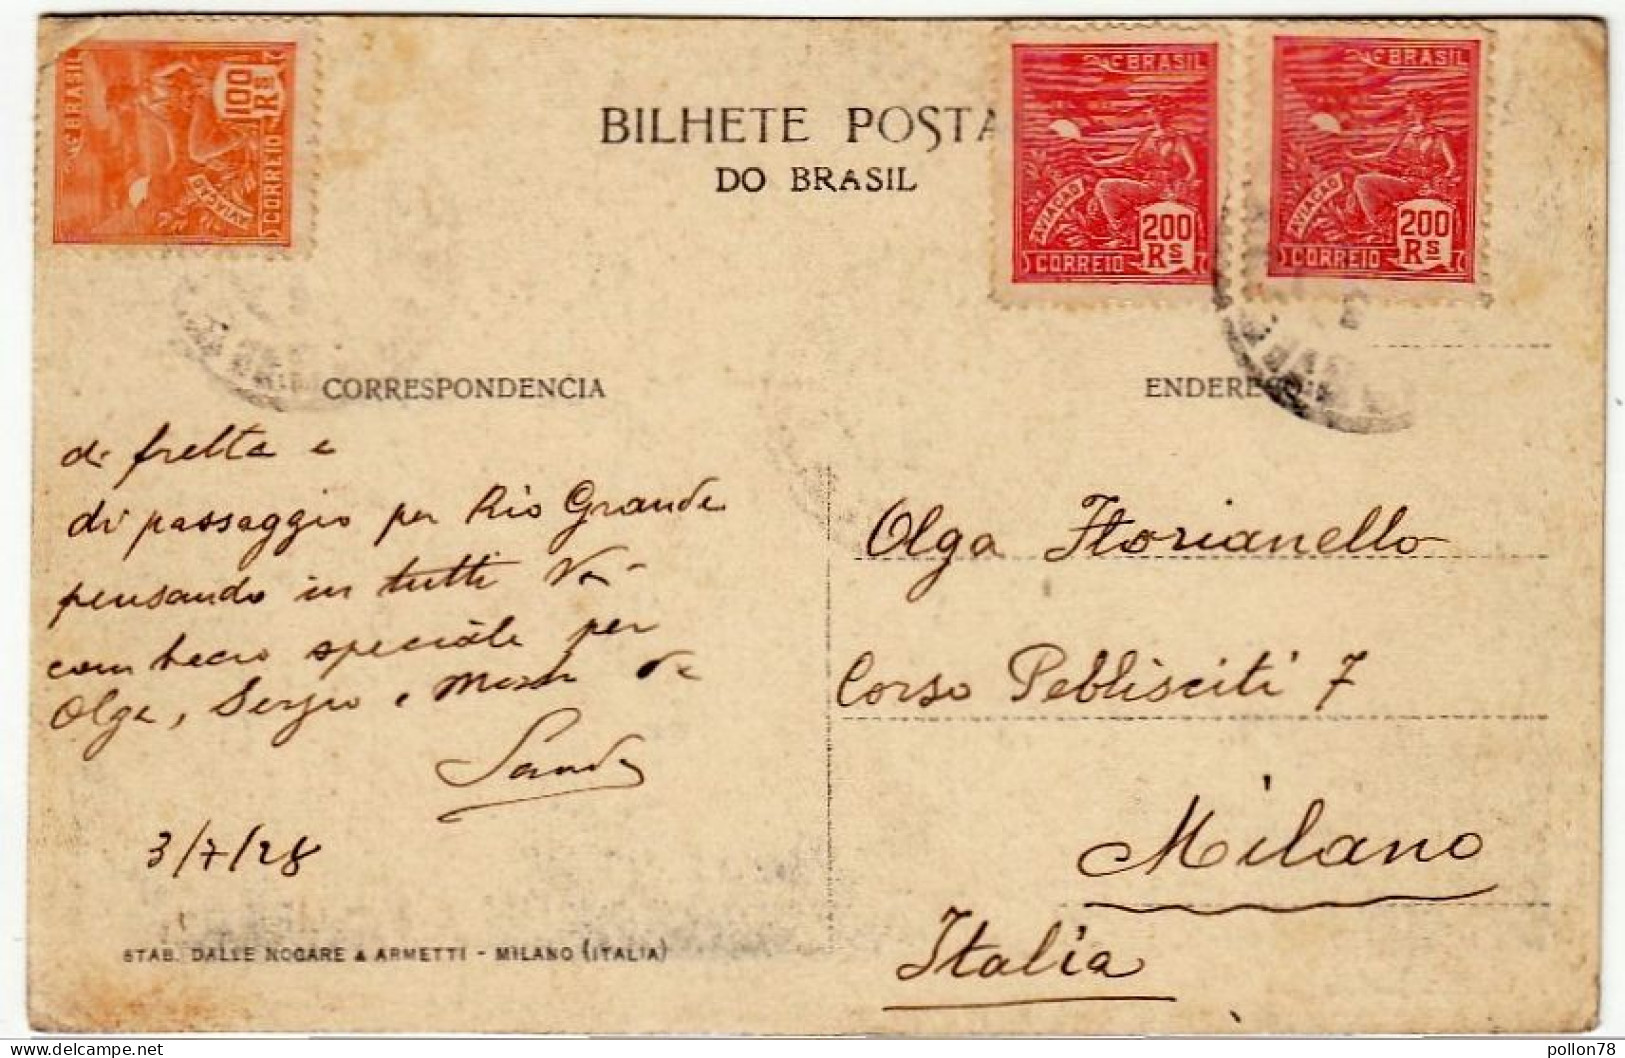 BRASILE - RIO GRANDE DO SUL - BRASIL - RUA MARQUEZ DE CAXIAS - 1928 - Vedi Retro - Formato Piccolo - Porto Alegre